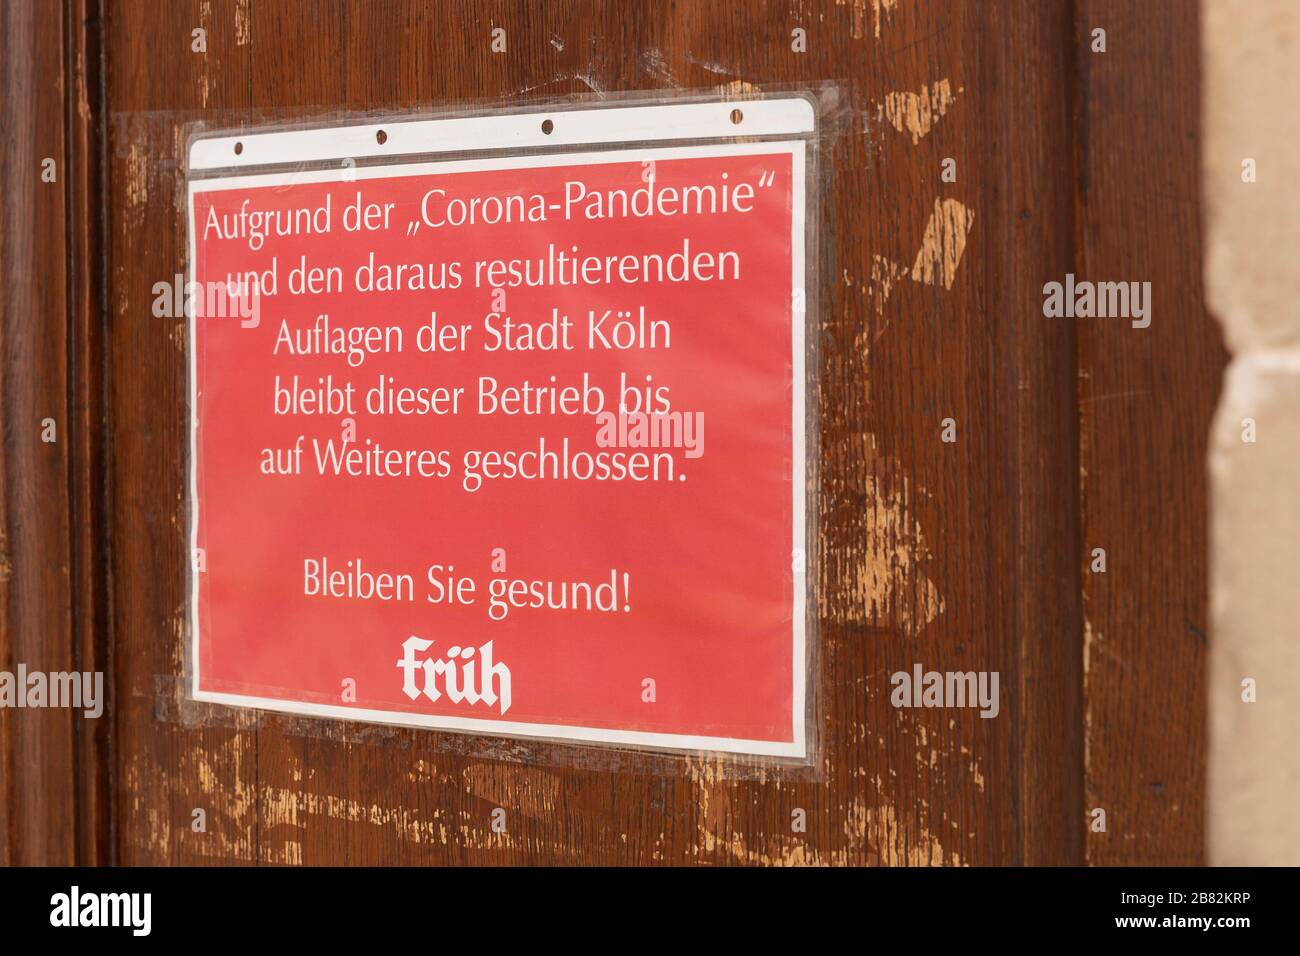 Signez dans un pub qu'il a fermé en raison de la crise de Corona et des exigences de la ville de Cologne Banque D'Images